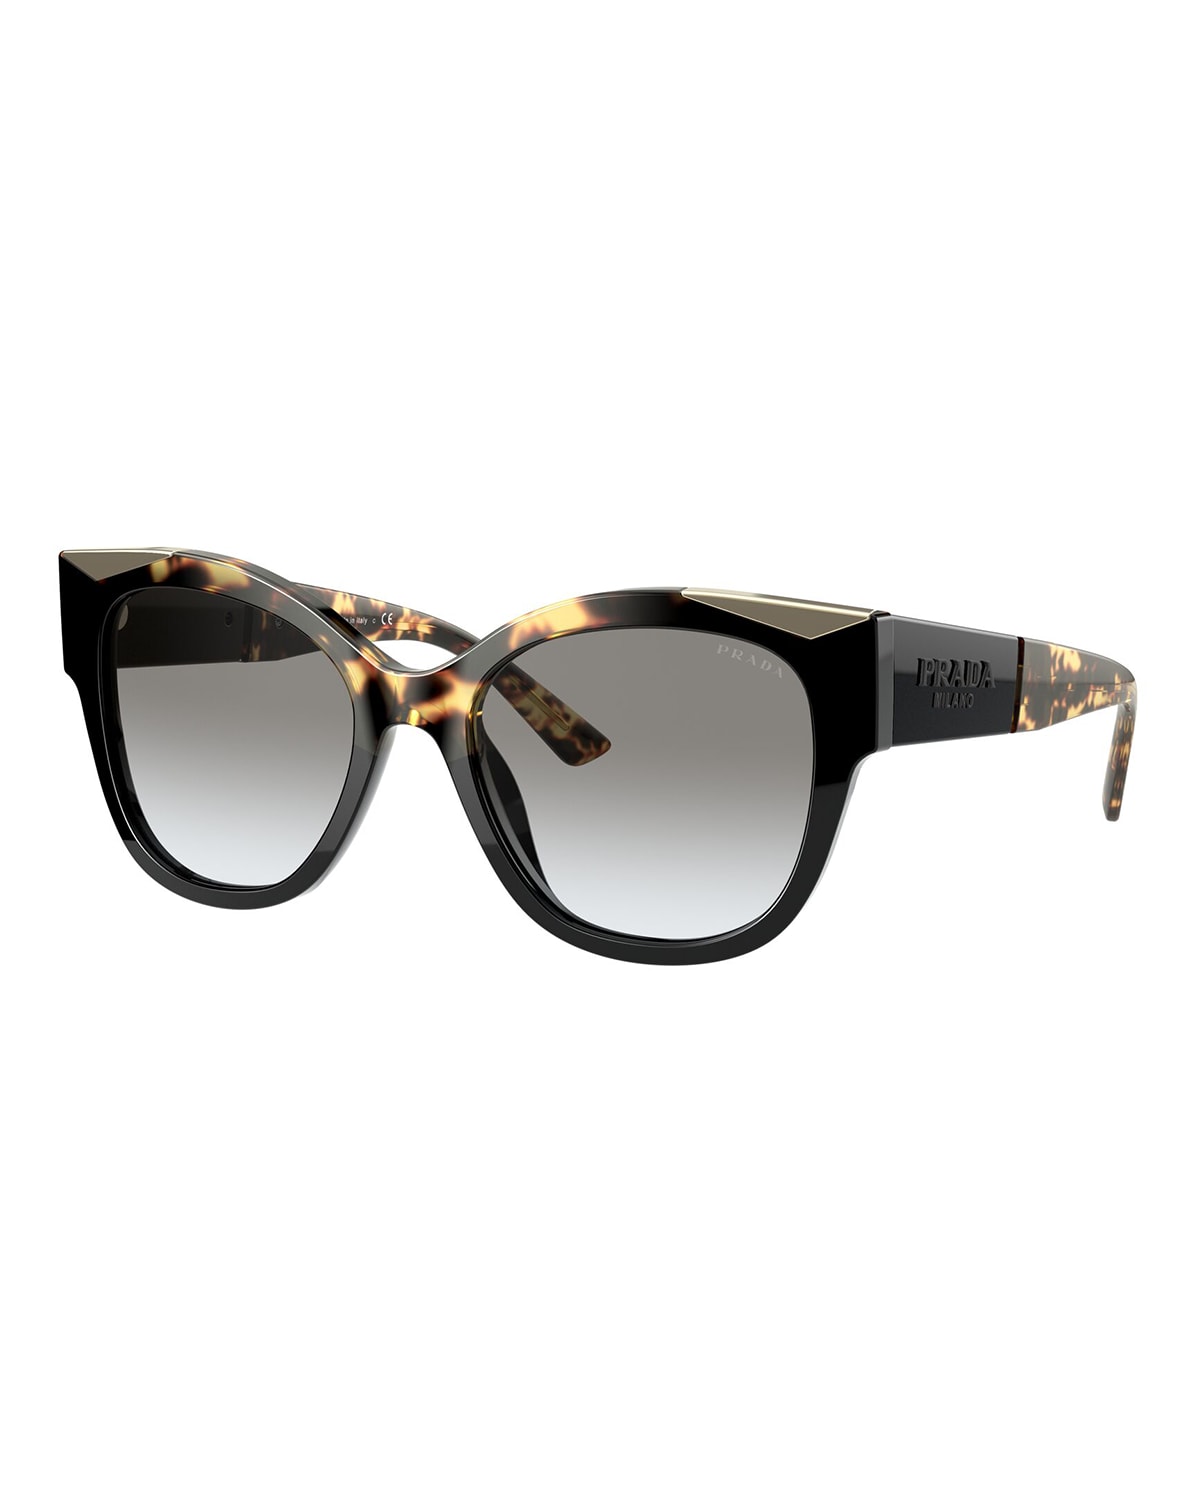 Prada Cat-eyed Round Acetate Sunglasses In Black/havana